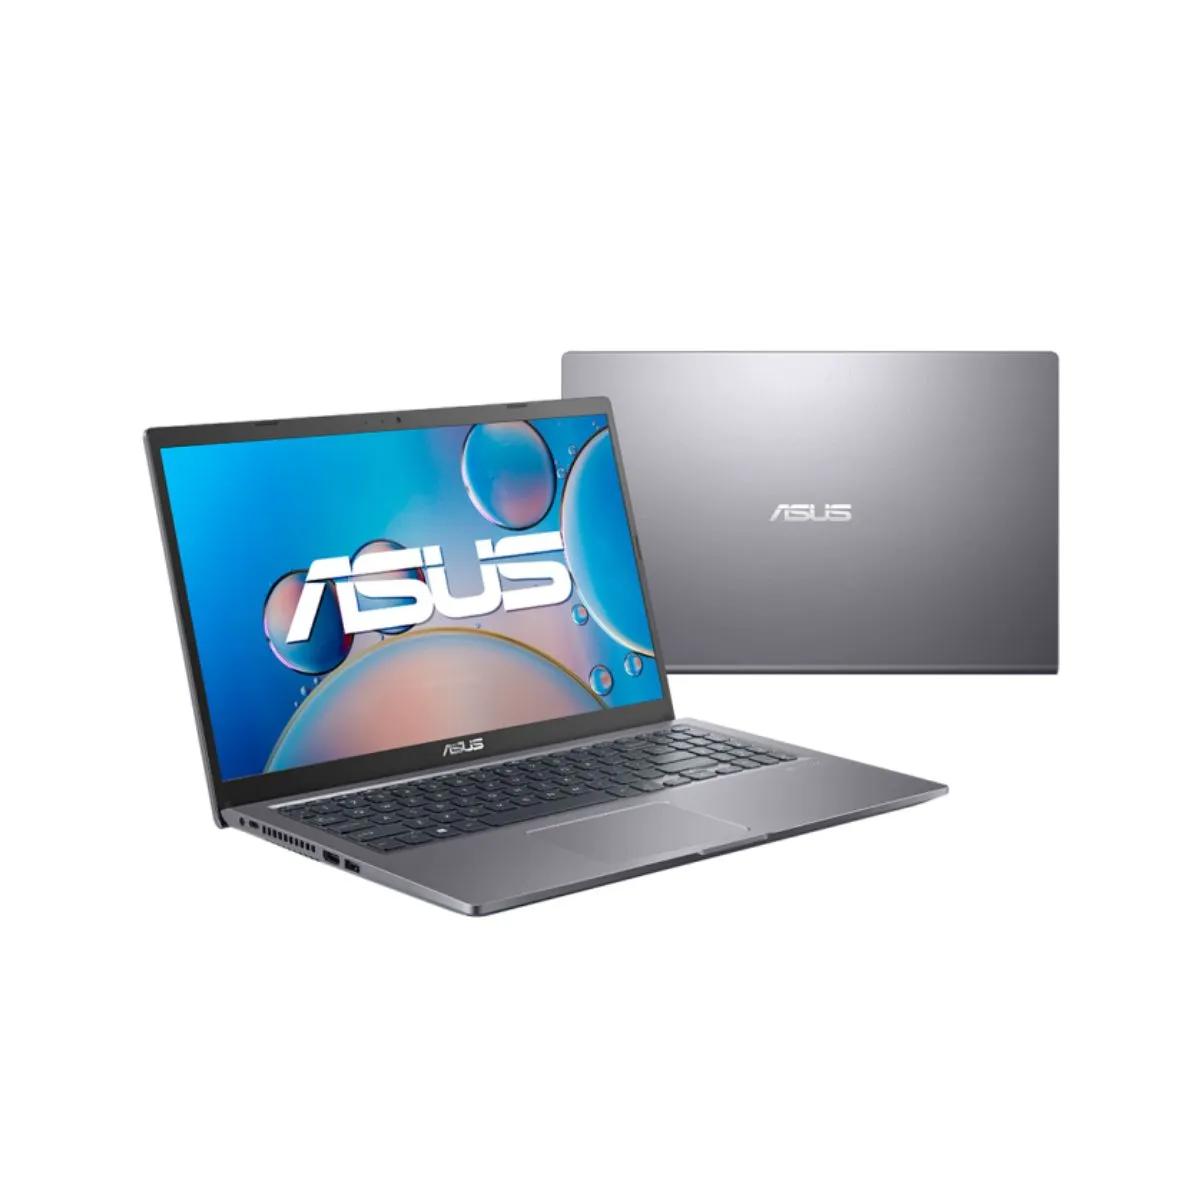 Notebook Asus X515ja-Ej1792 Intel Core I5 8Gb 256 Gb Ssd Tela 15,6" Endless Os Pcie G3x2